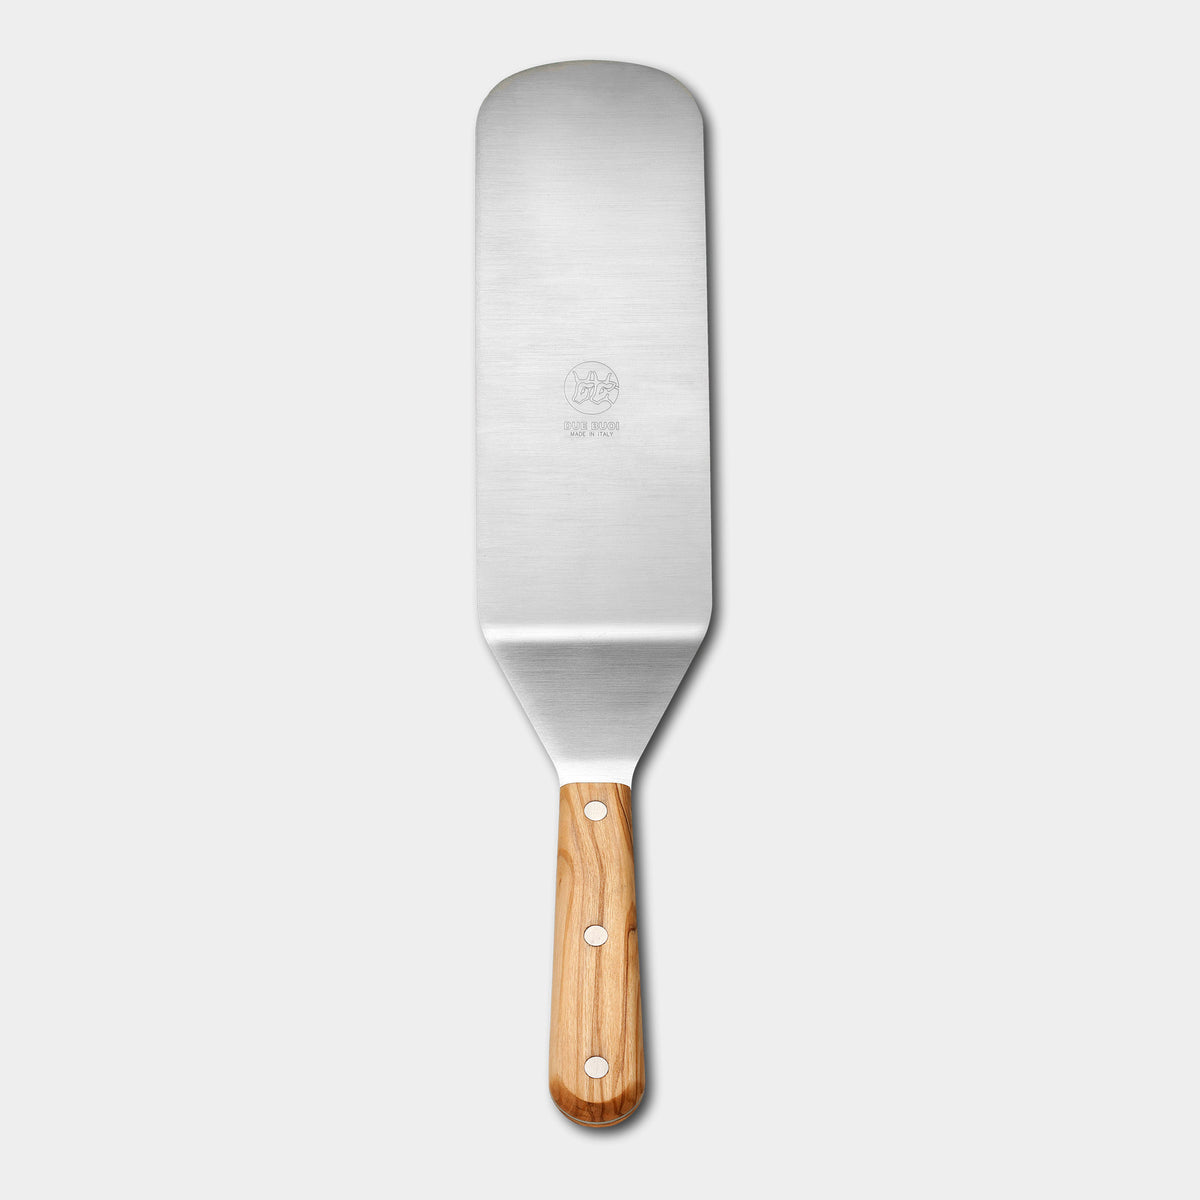 Sanelli - Spatula lasagna 15 cm - 3706.15 - kitchen accessory